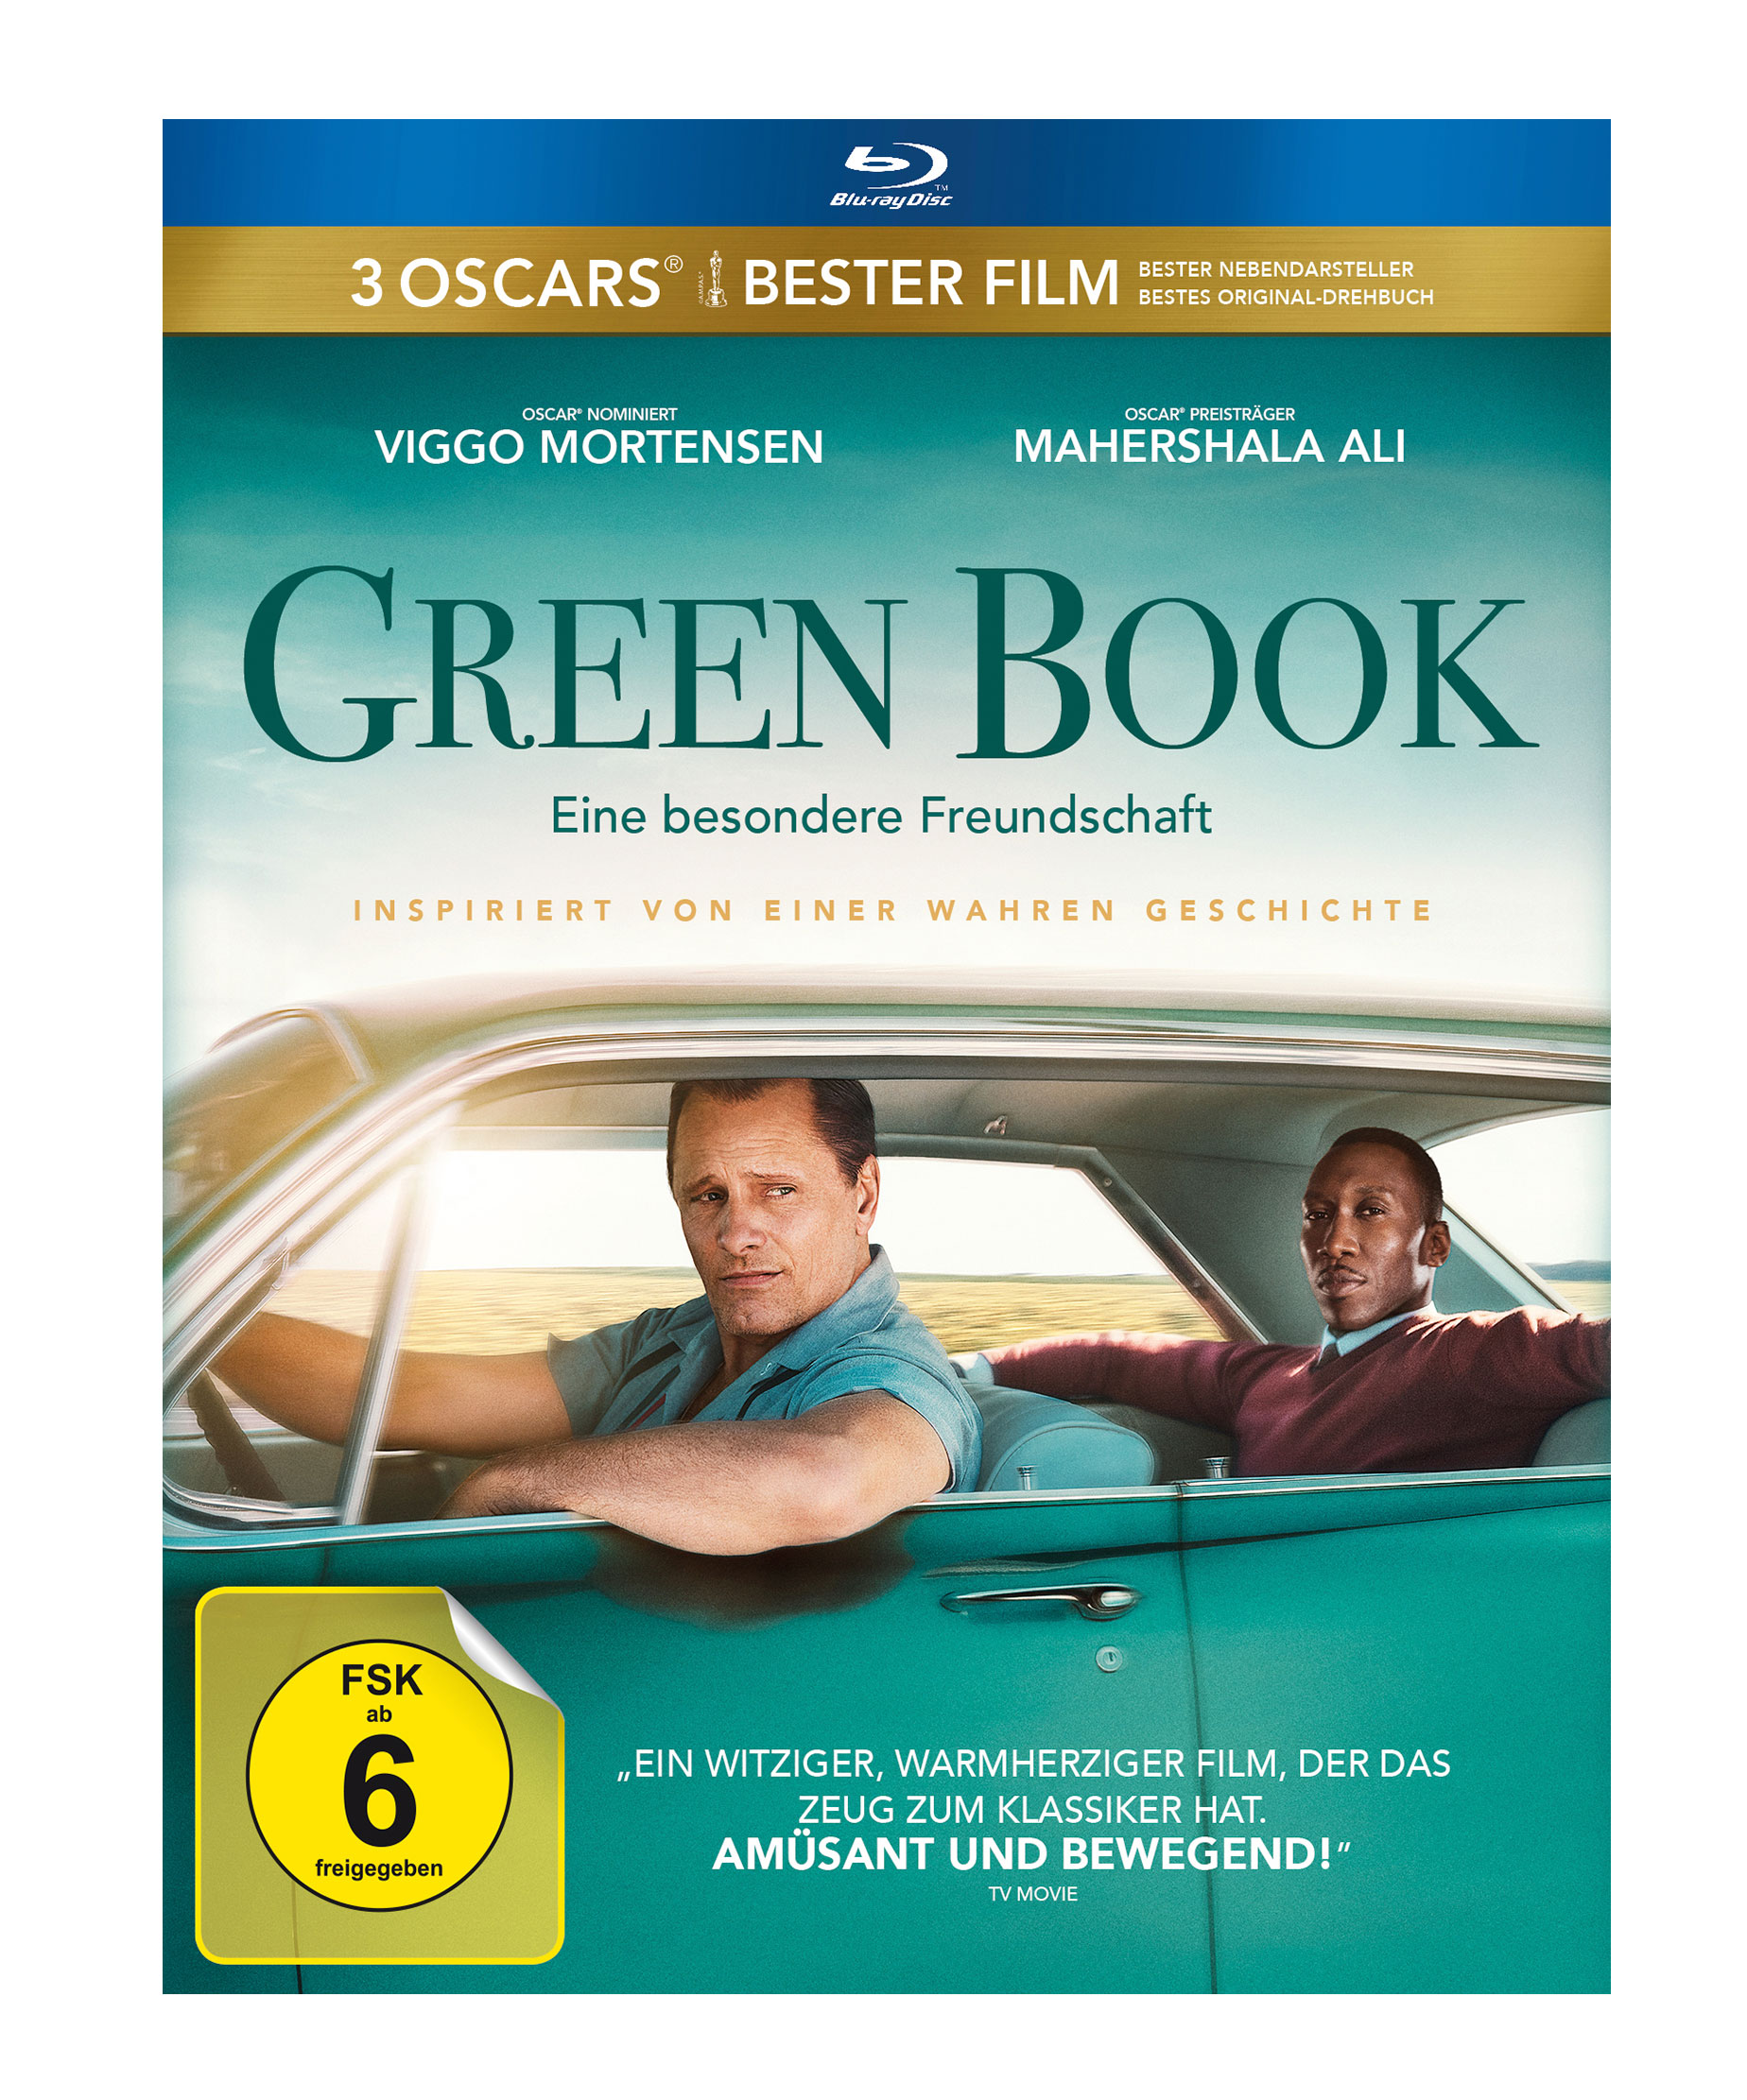 Green Book - Eine Blu-ray Freundschaft besondere